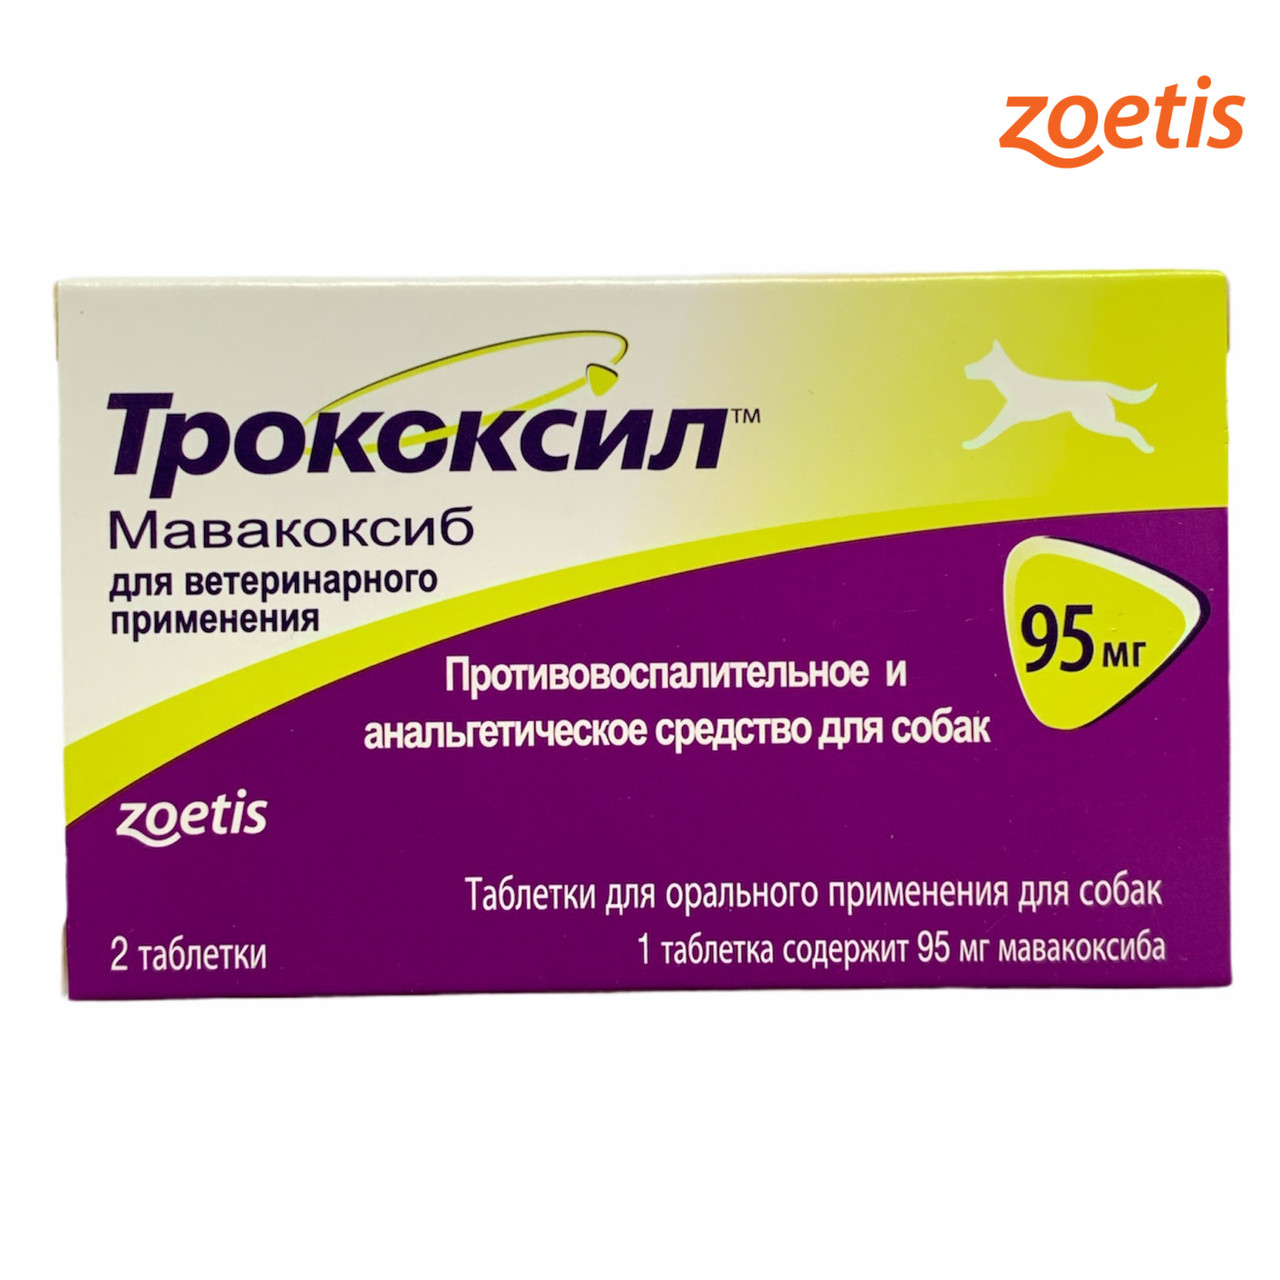 Купить трококсил 75. Трококсил 95 мг. Zoetis Трококсил 20мг, 2таб. Zoetis Трококсил (95 мг №2). Трококсил таблетки 95 мг.